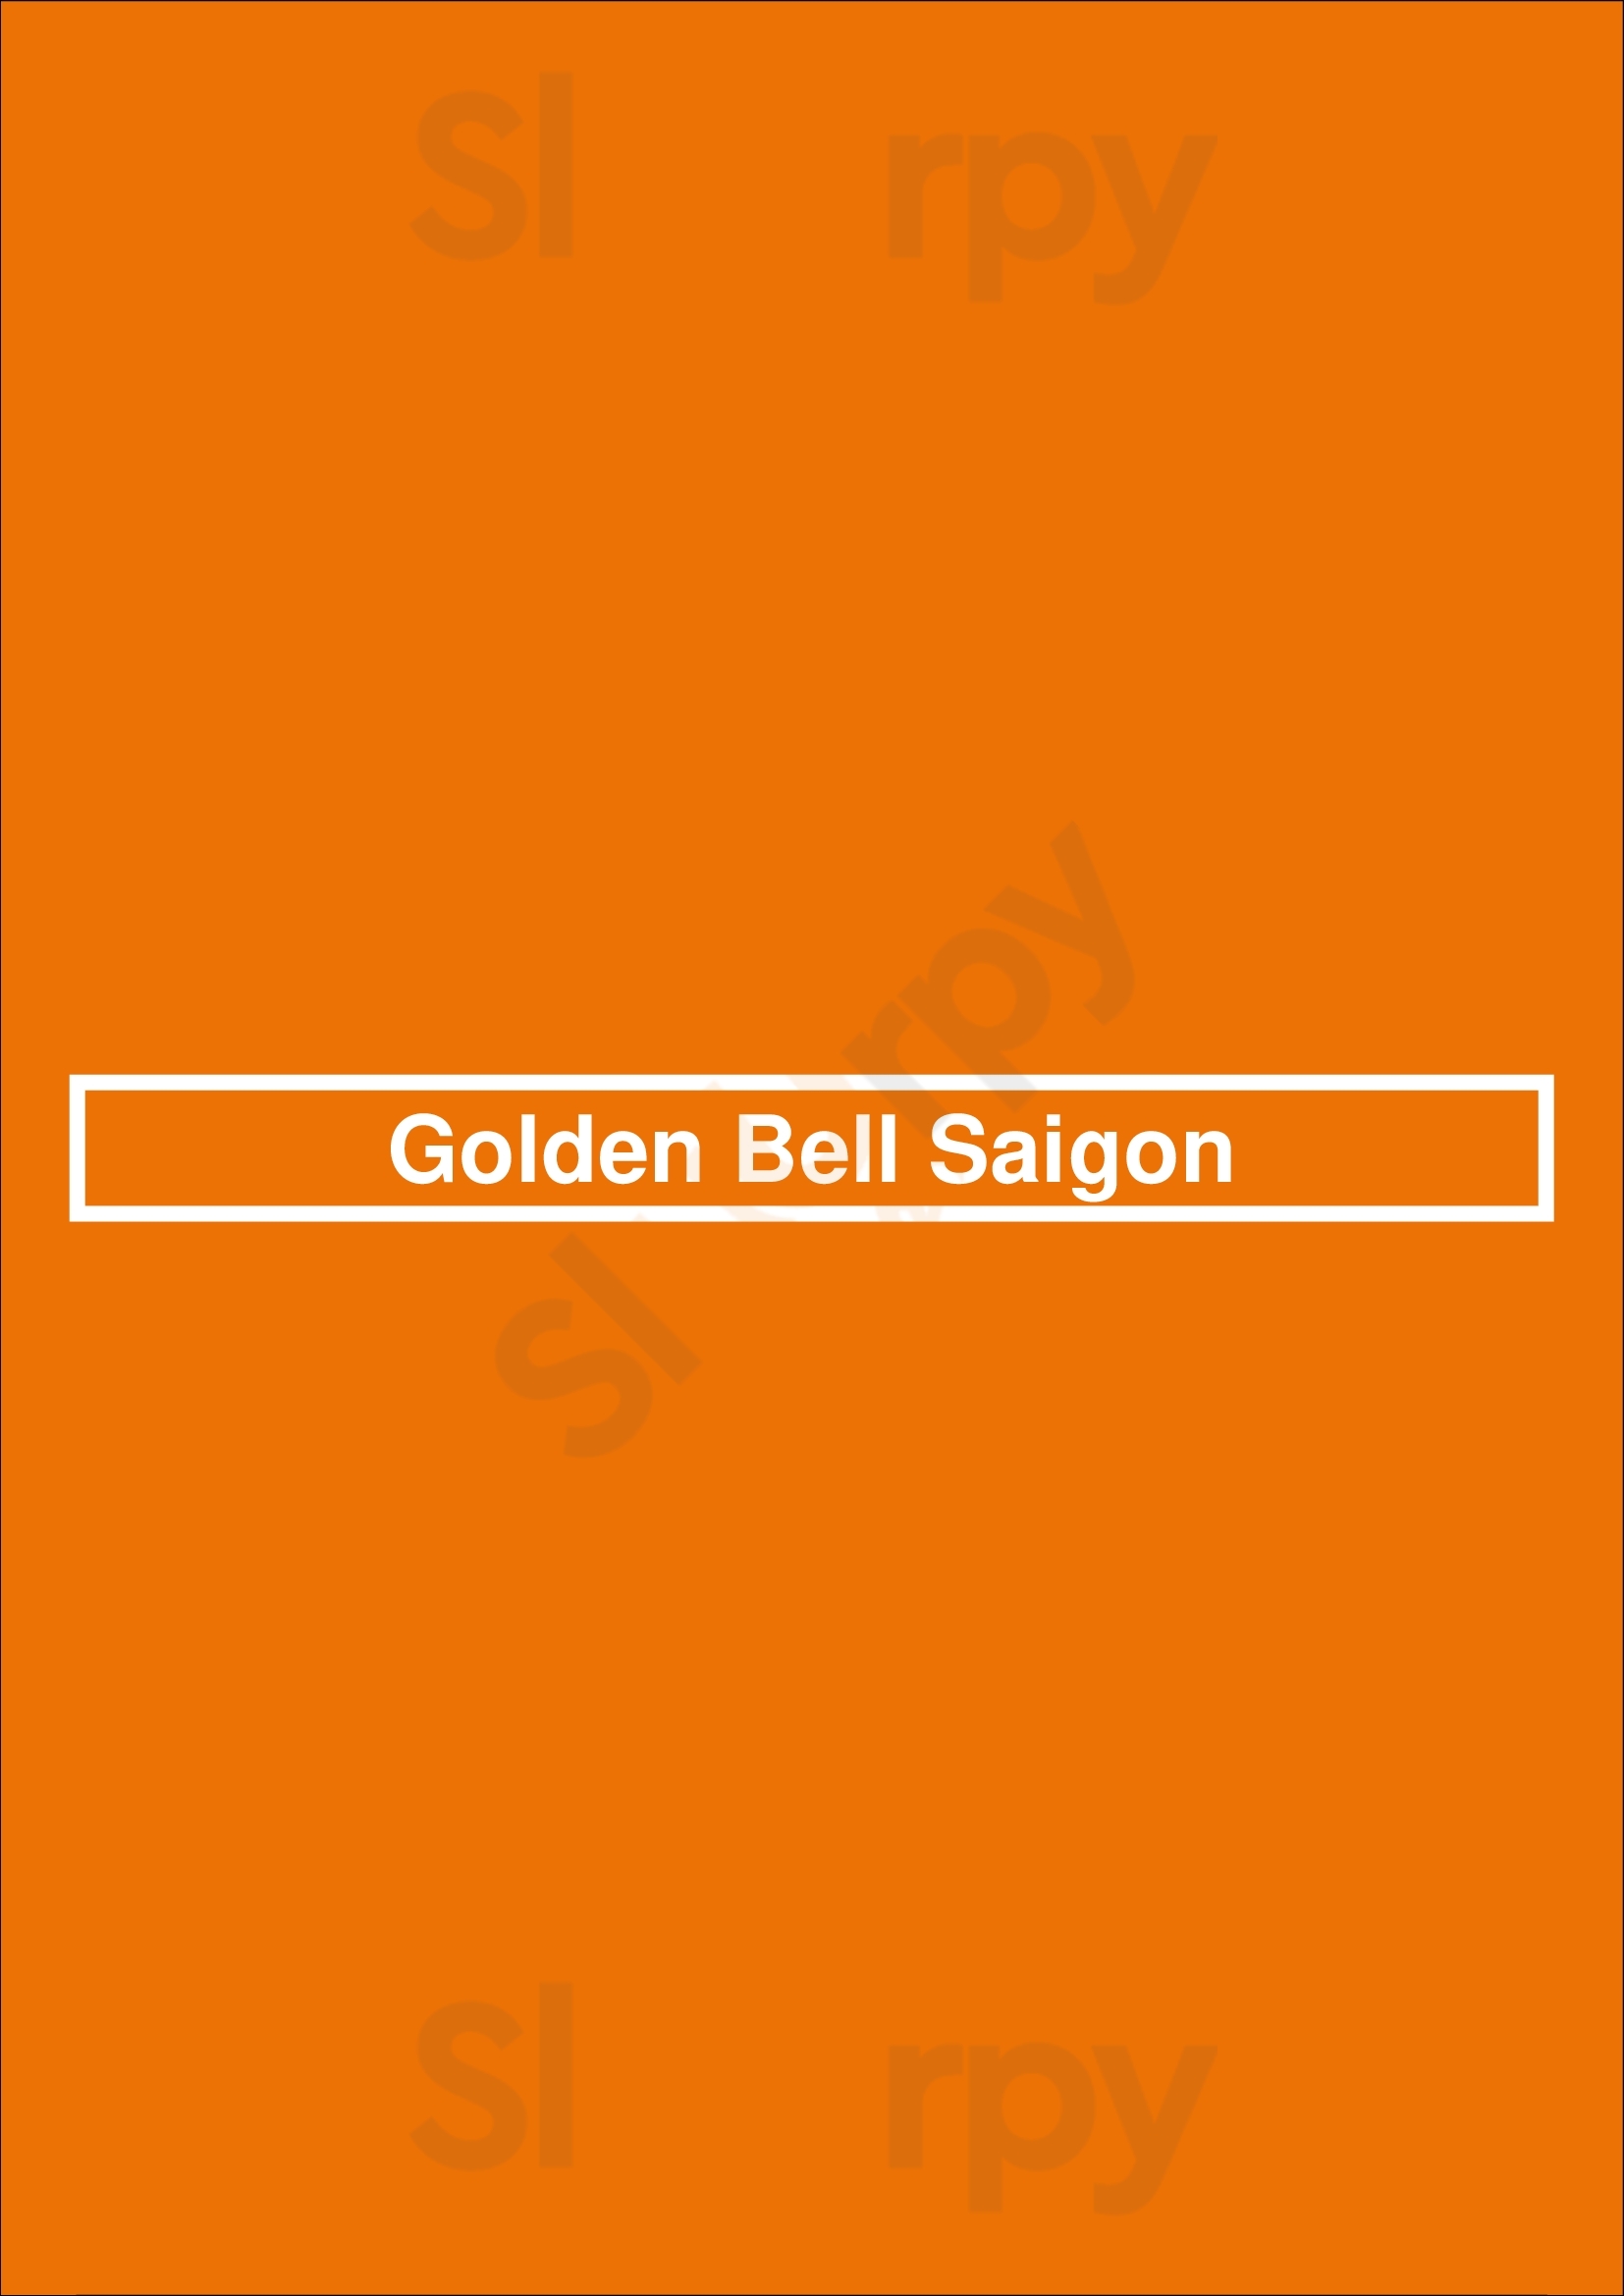 Golden Bell Saigon Calgary Menu - 1